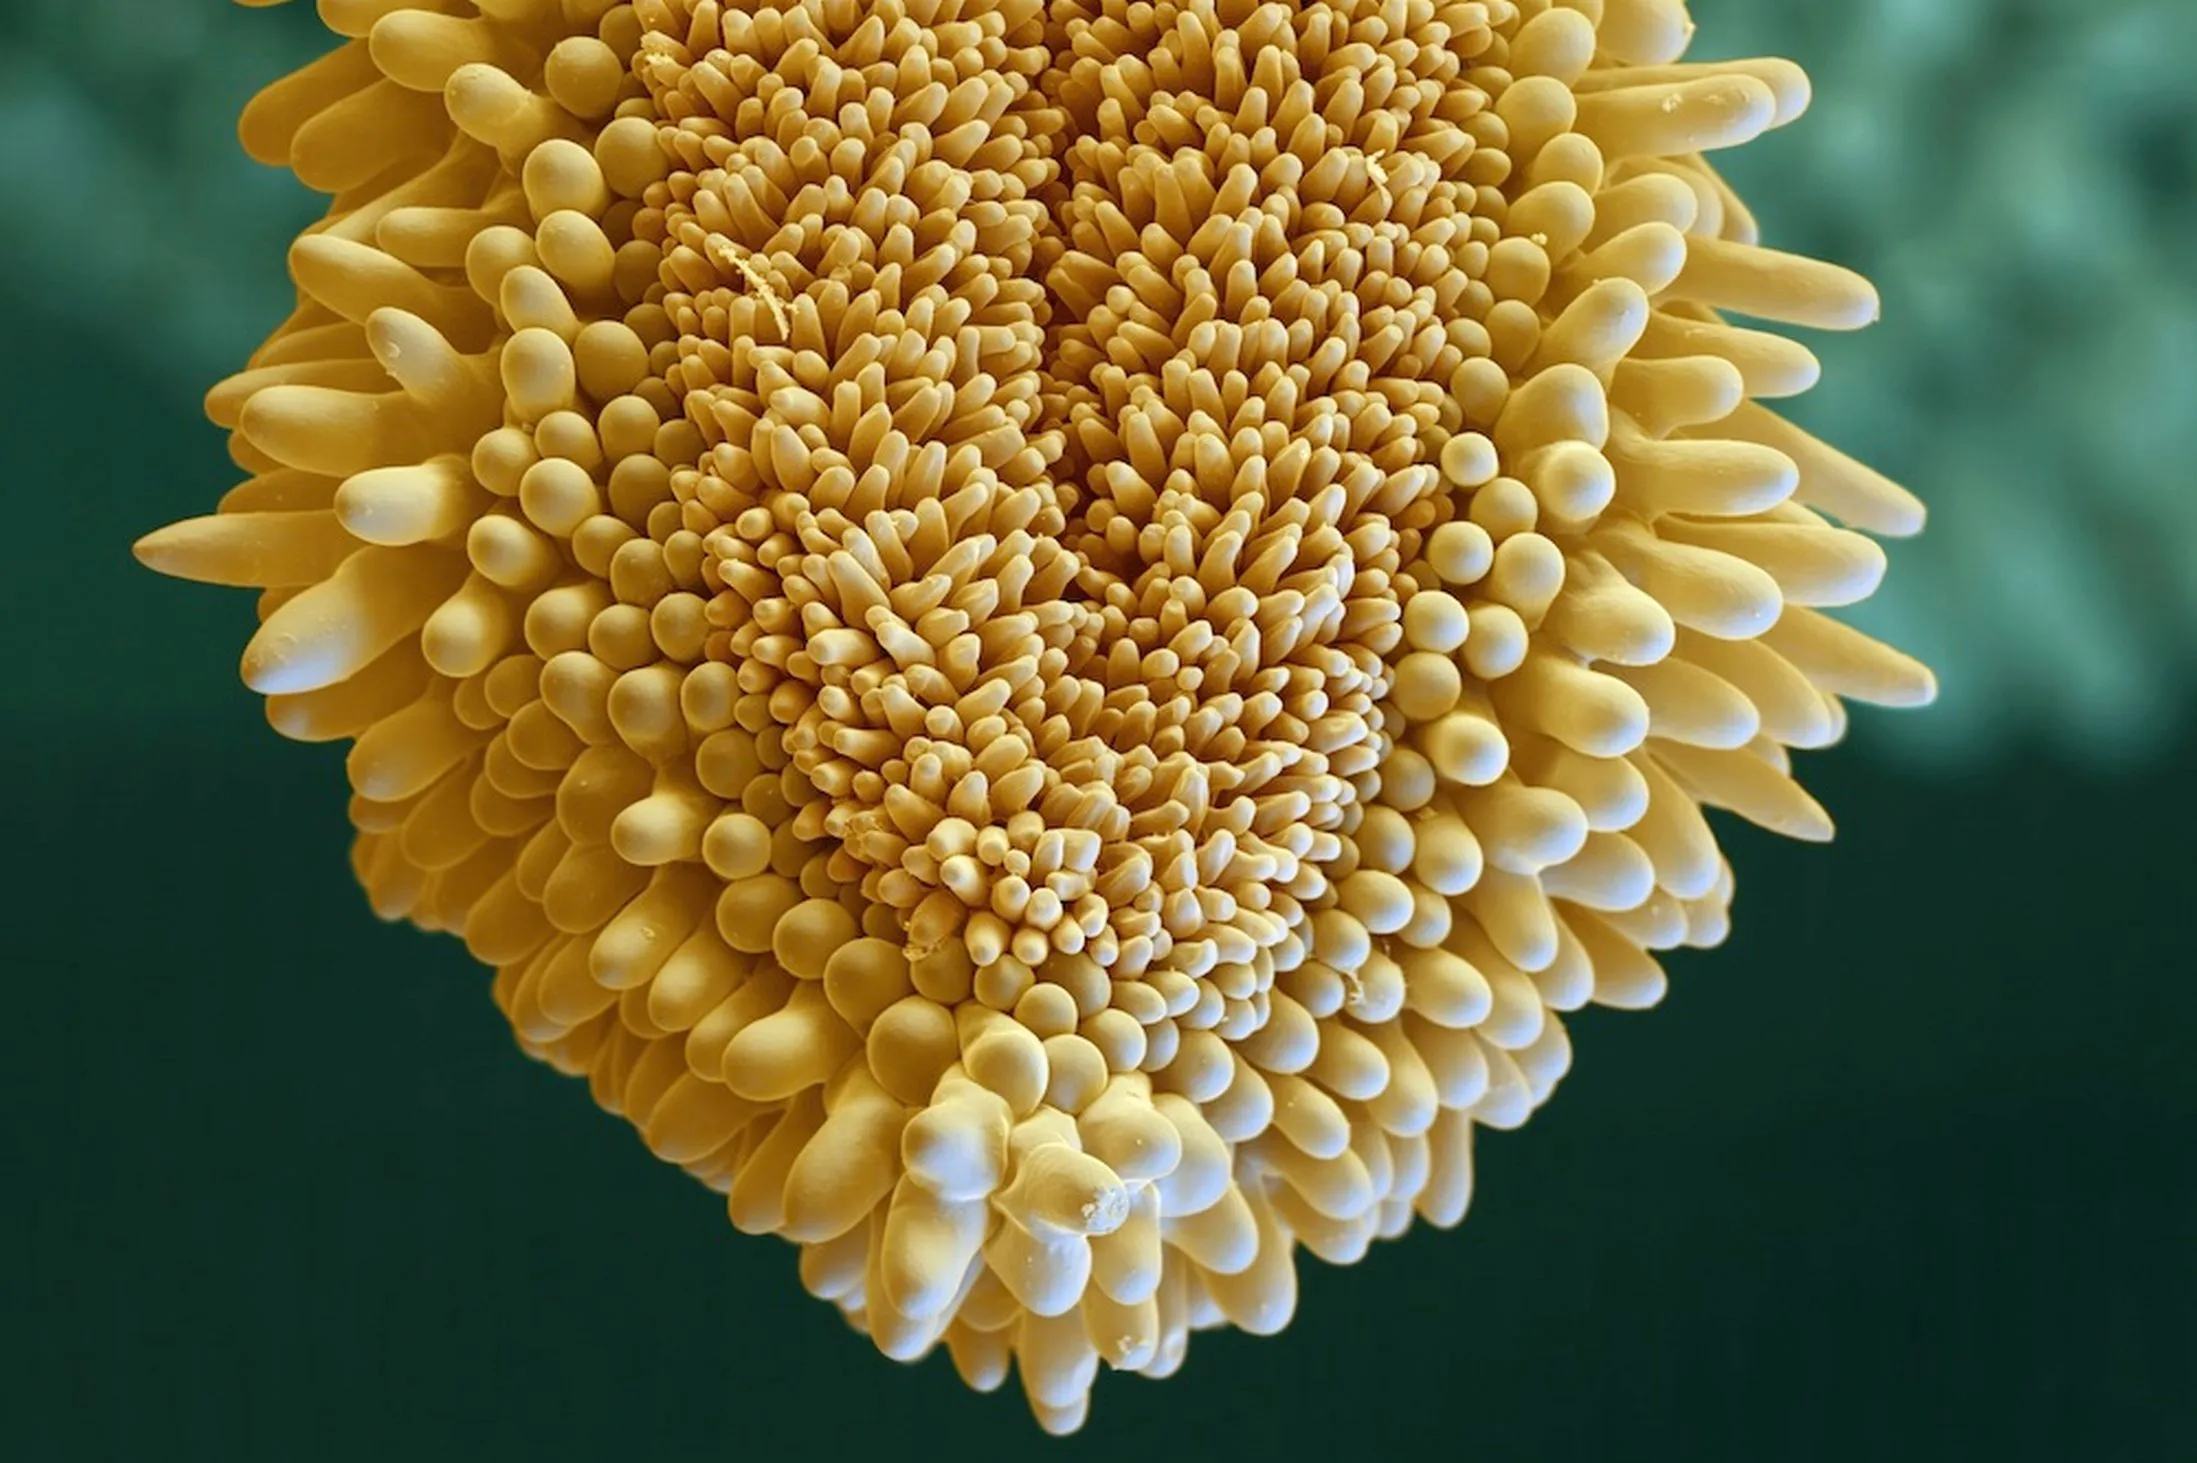 Пыльца название. Пыльца микрофотографии. Пыльца цветковых растений под микроскопом. Пыльца цветка под микроскопом. Рыльце пестика микрофотография.